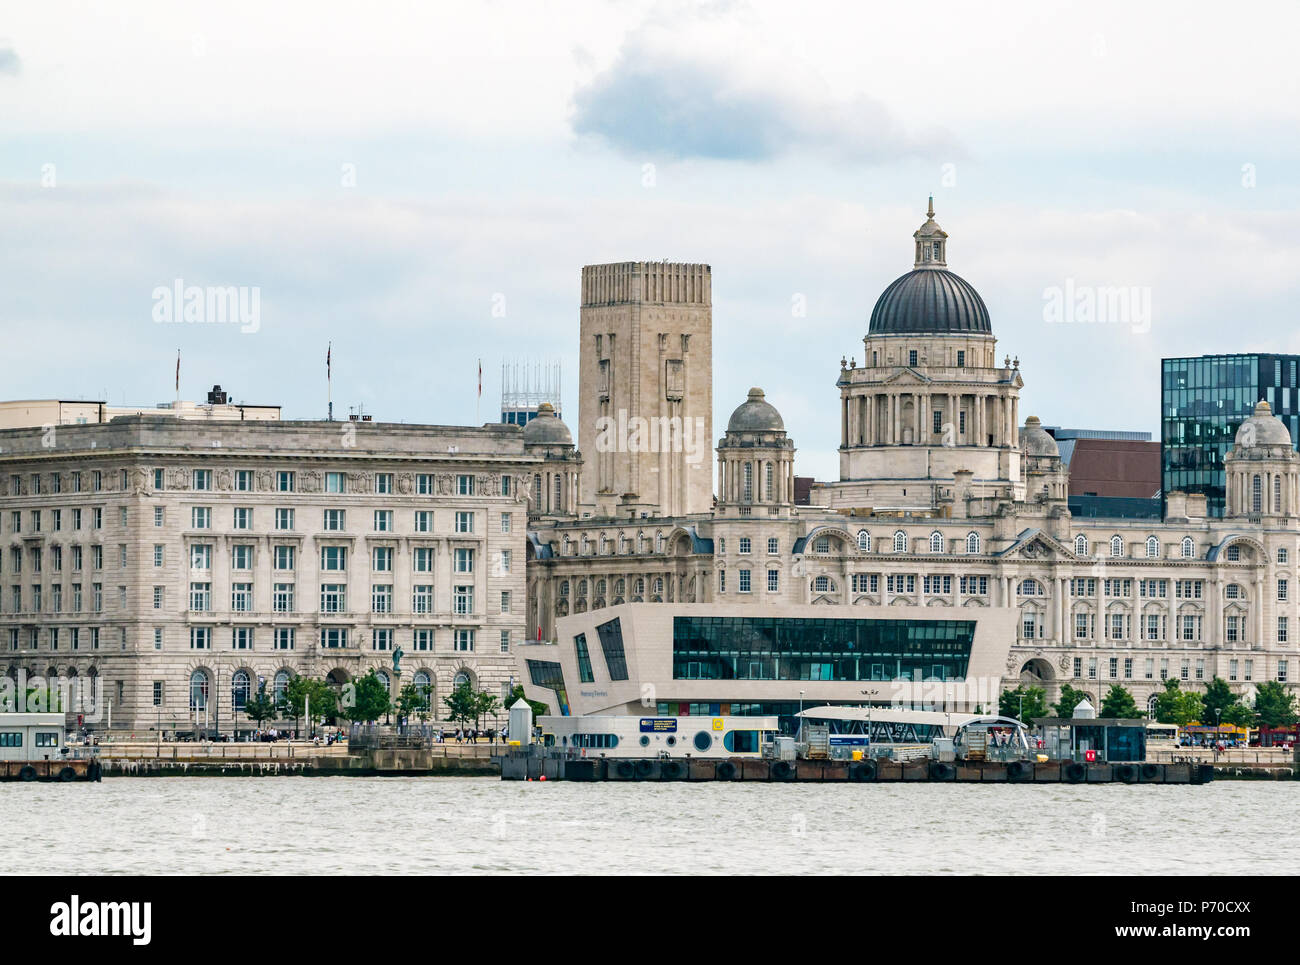 Les trois grâces, Port of Liverpool building, Cunard Building et Museum of Liverpool et Georges tour Dock, Pier Head, Liverpool, Angleterre, Royaume-Uni Banque D'Images